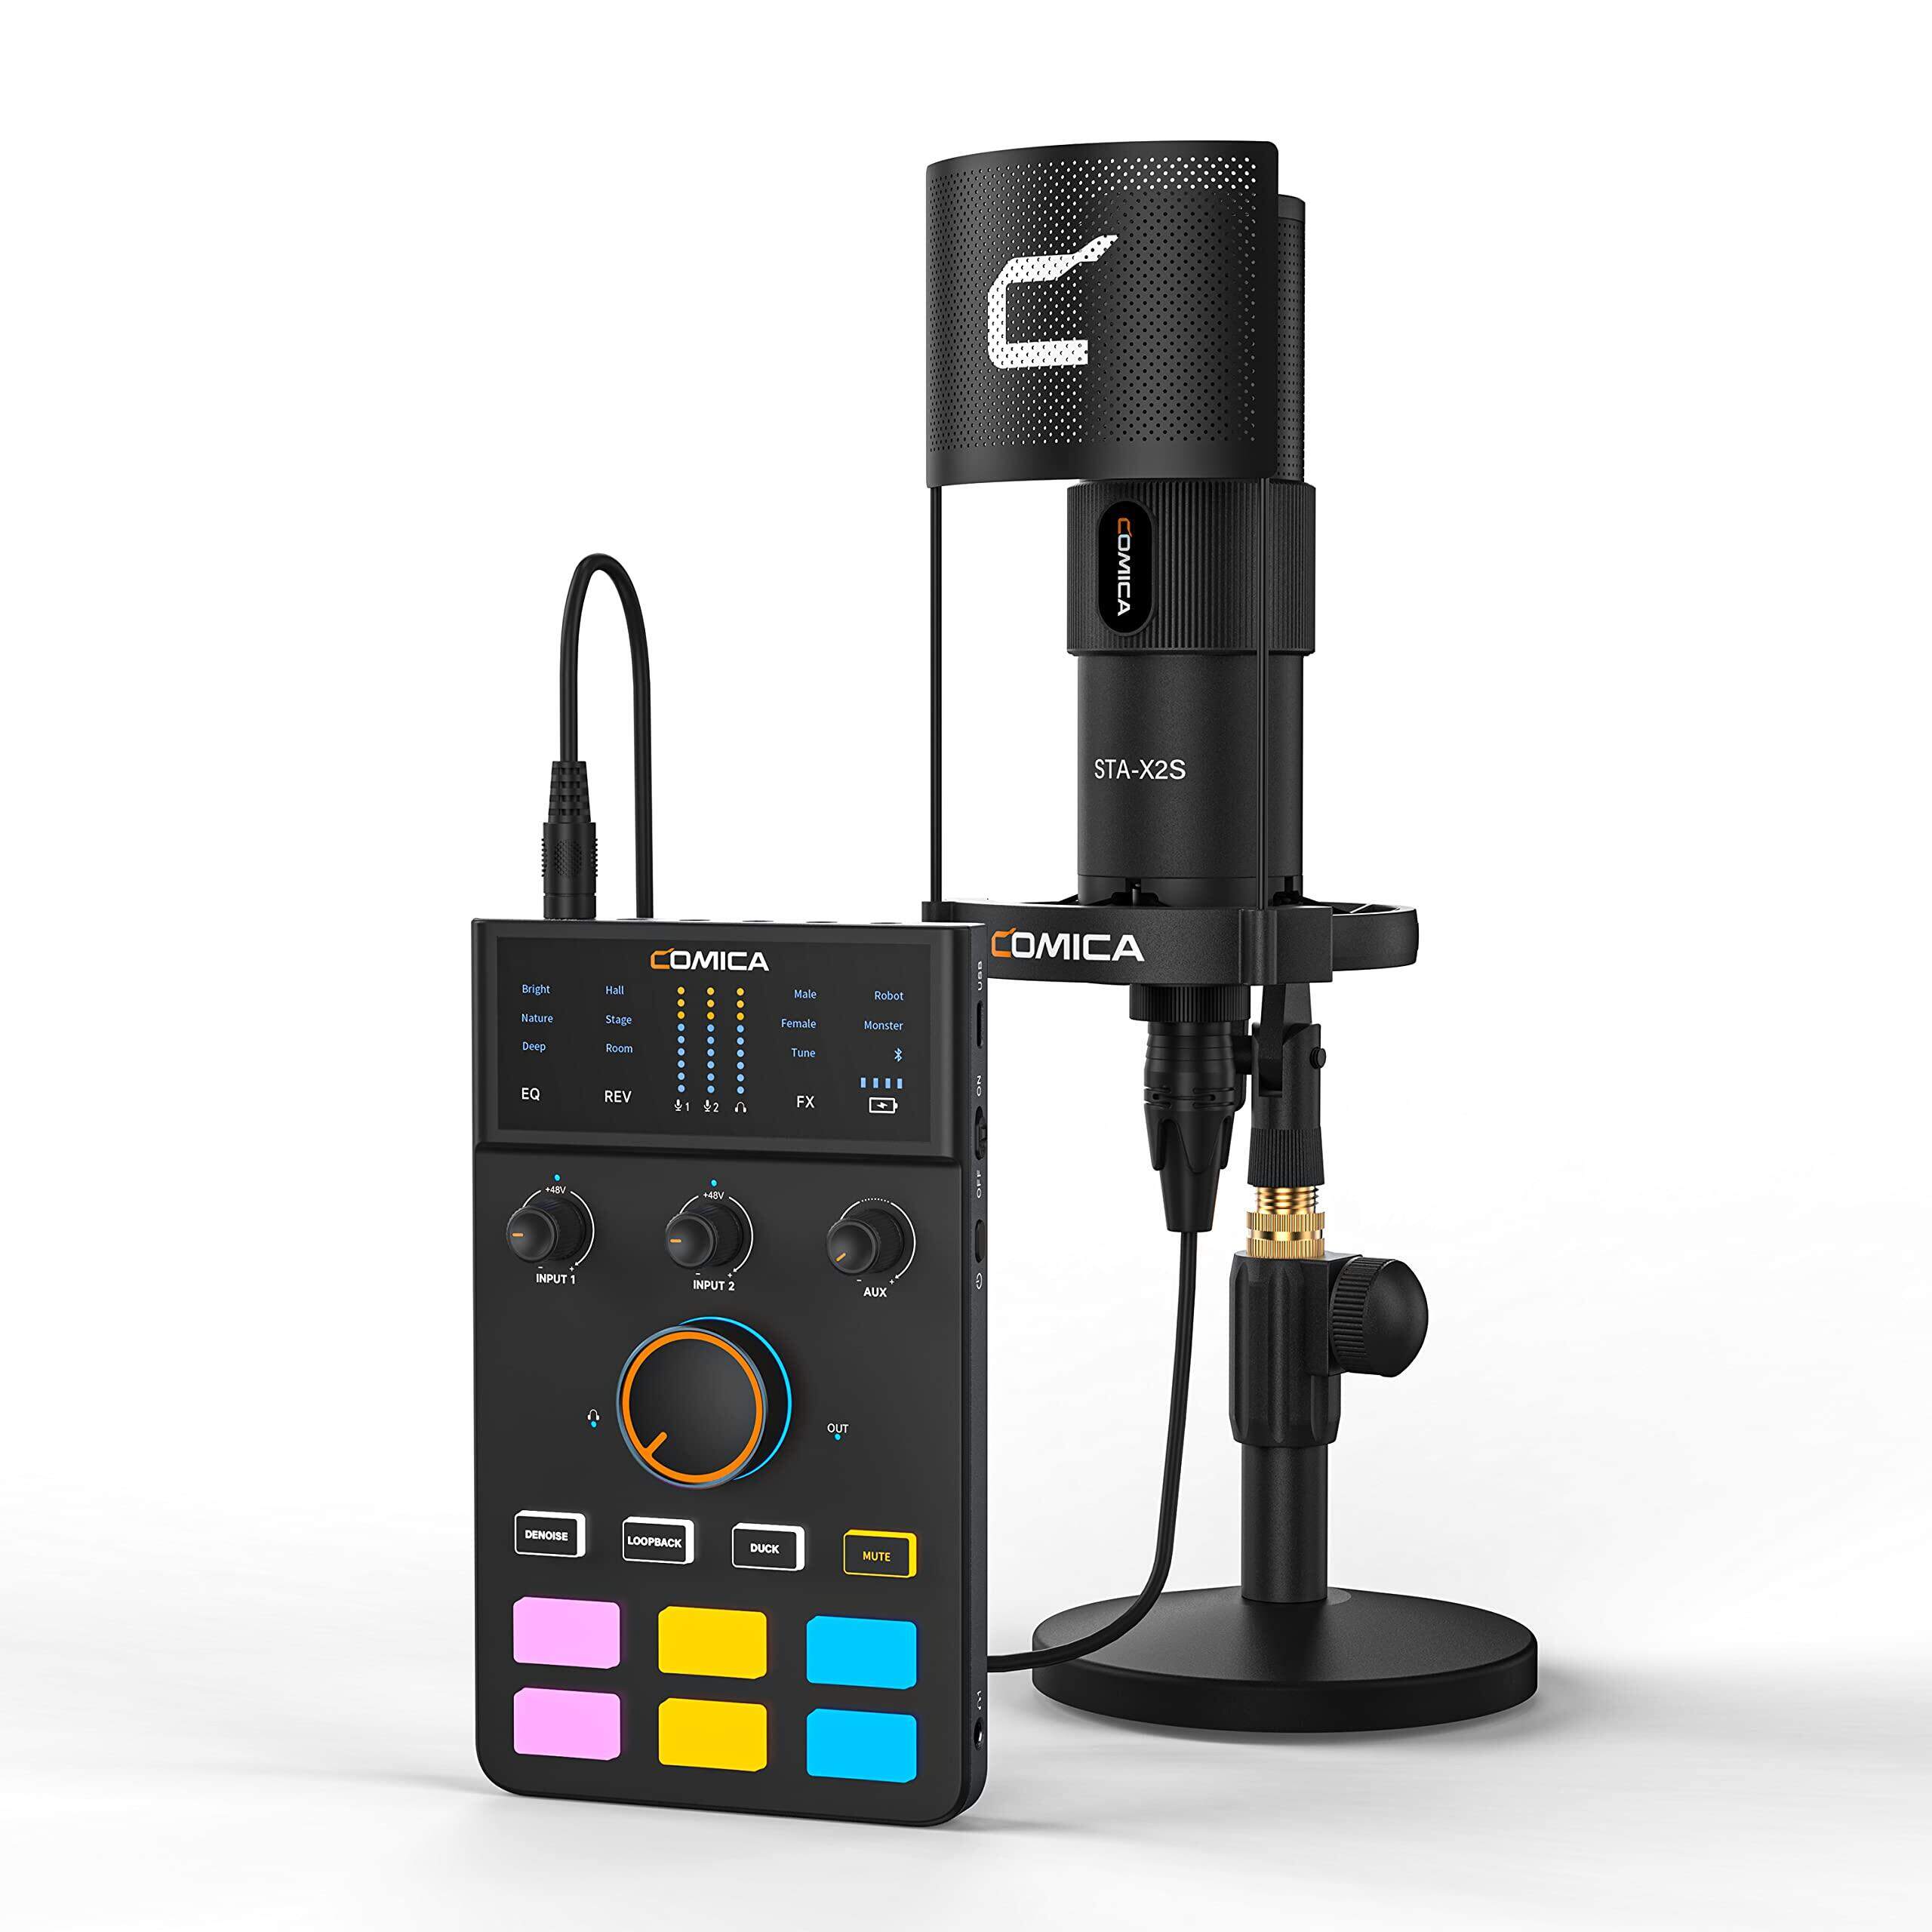 Comica adcaster C1-K1 podcast thiết bị Bó-Giao diện âm thanh USB với đầu  vào XLR kép, Bộ đổi giọng nói, 4 mic Preamp, 48kHz/24bit XLR Mic Điện dung  cho podcasting, streaming, chơi game và ghi âm | Lazada.vn